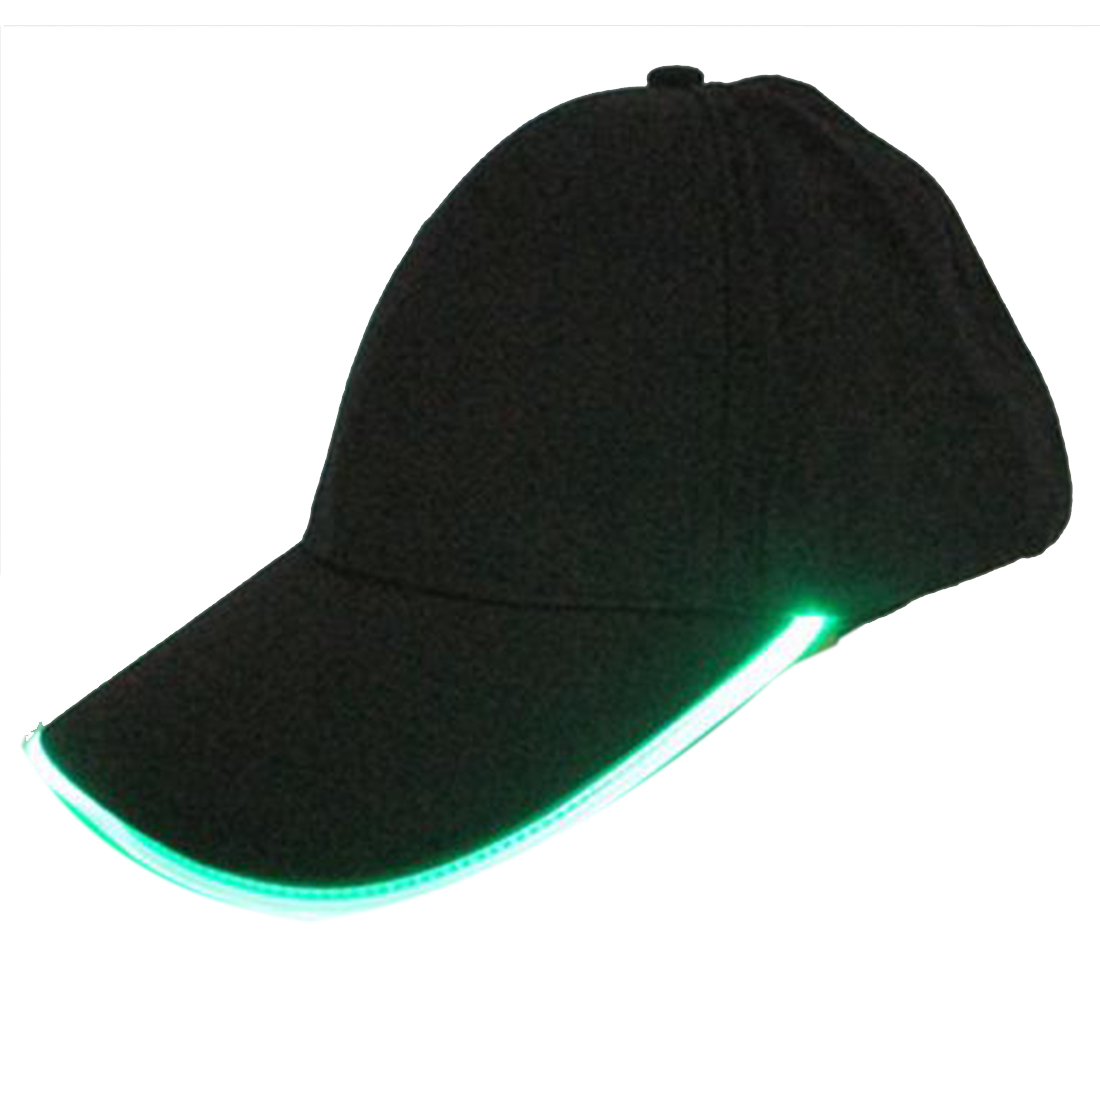 Led Light baseball hats Hot selling fashion caps , led baseball cap